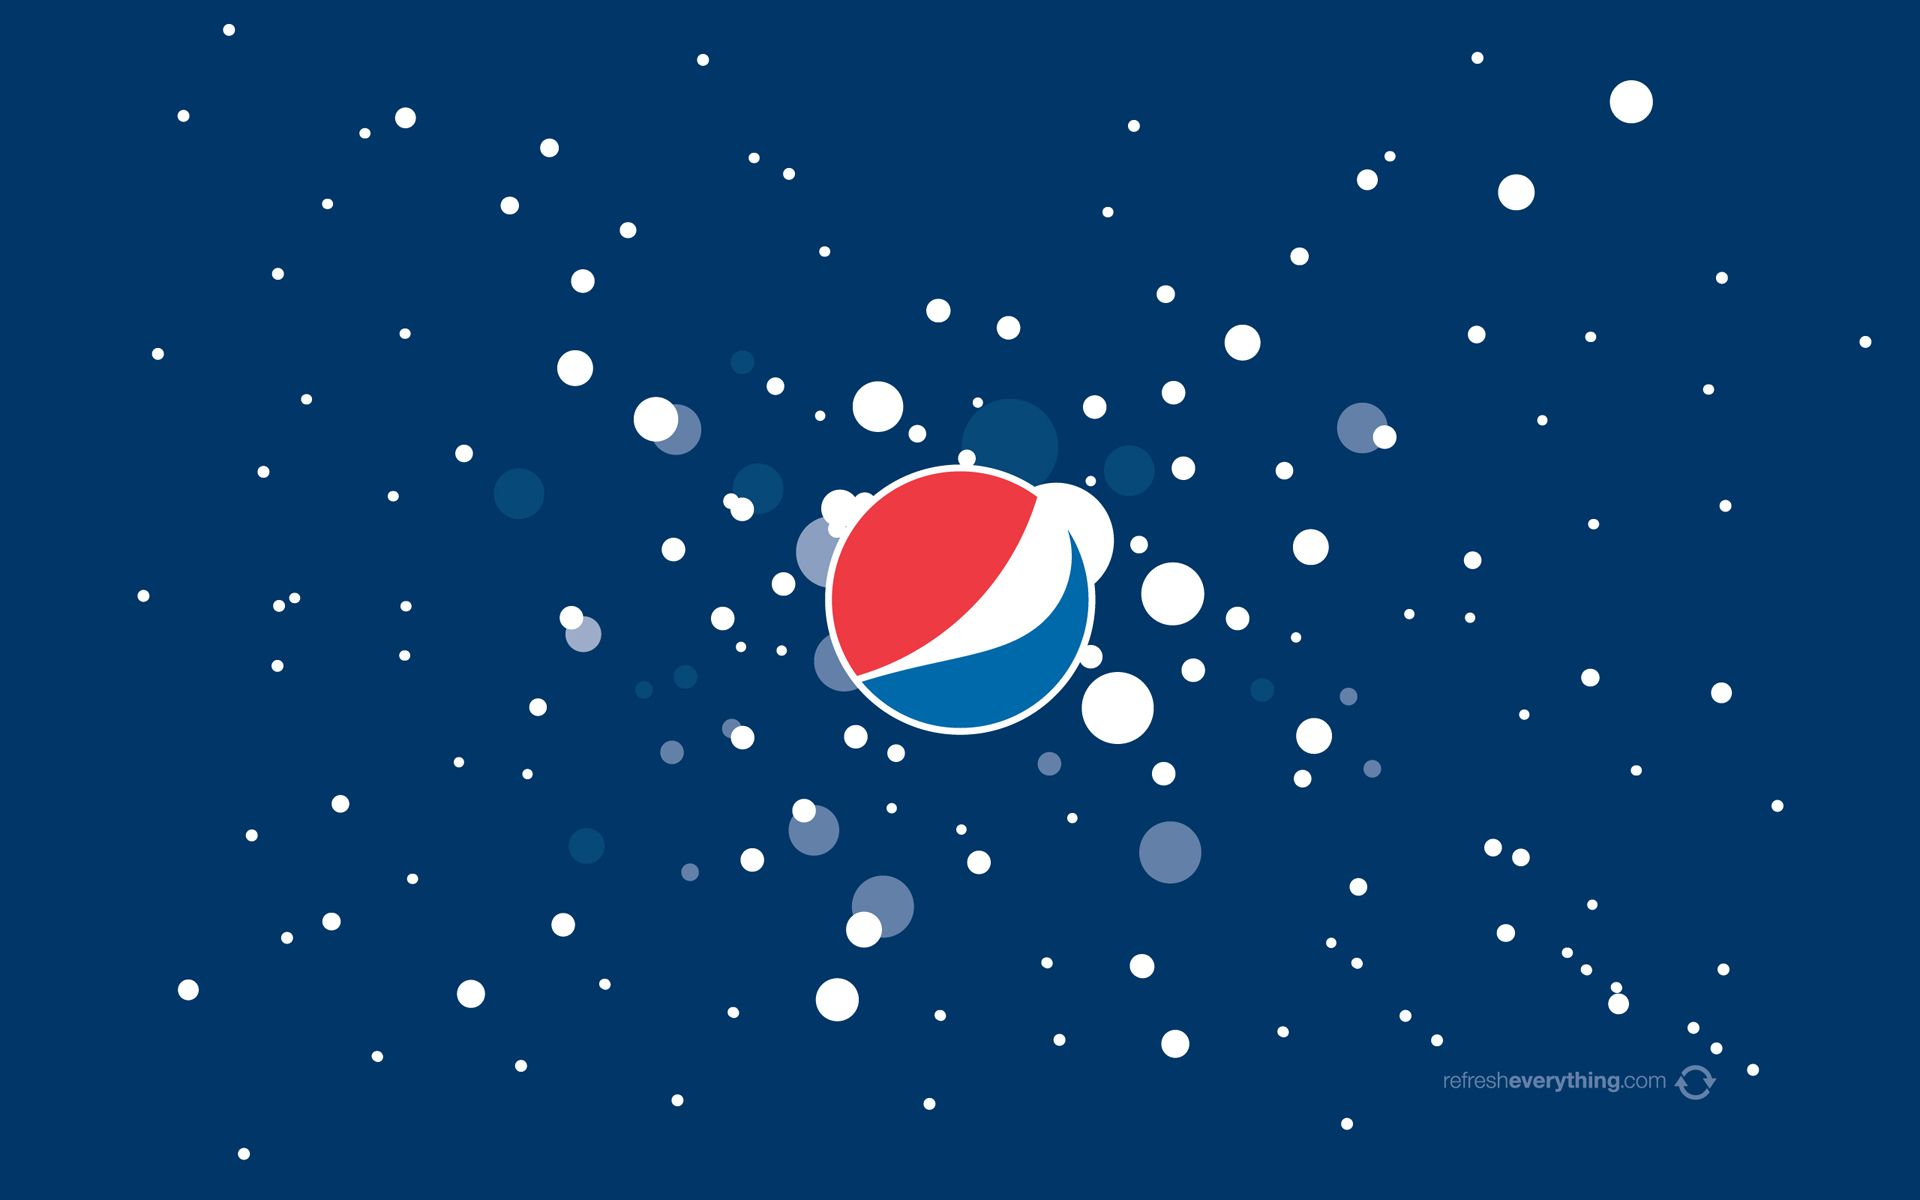 Pepsi Cola Wallpapers - Wallpaper Cave